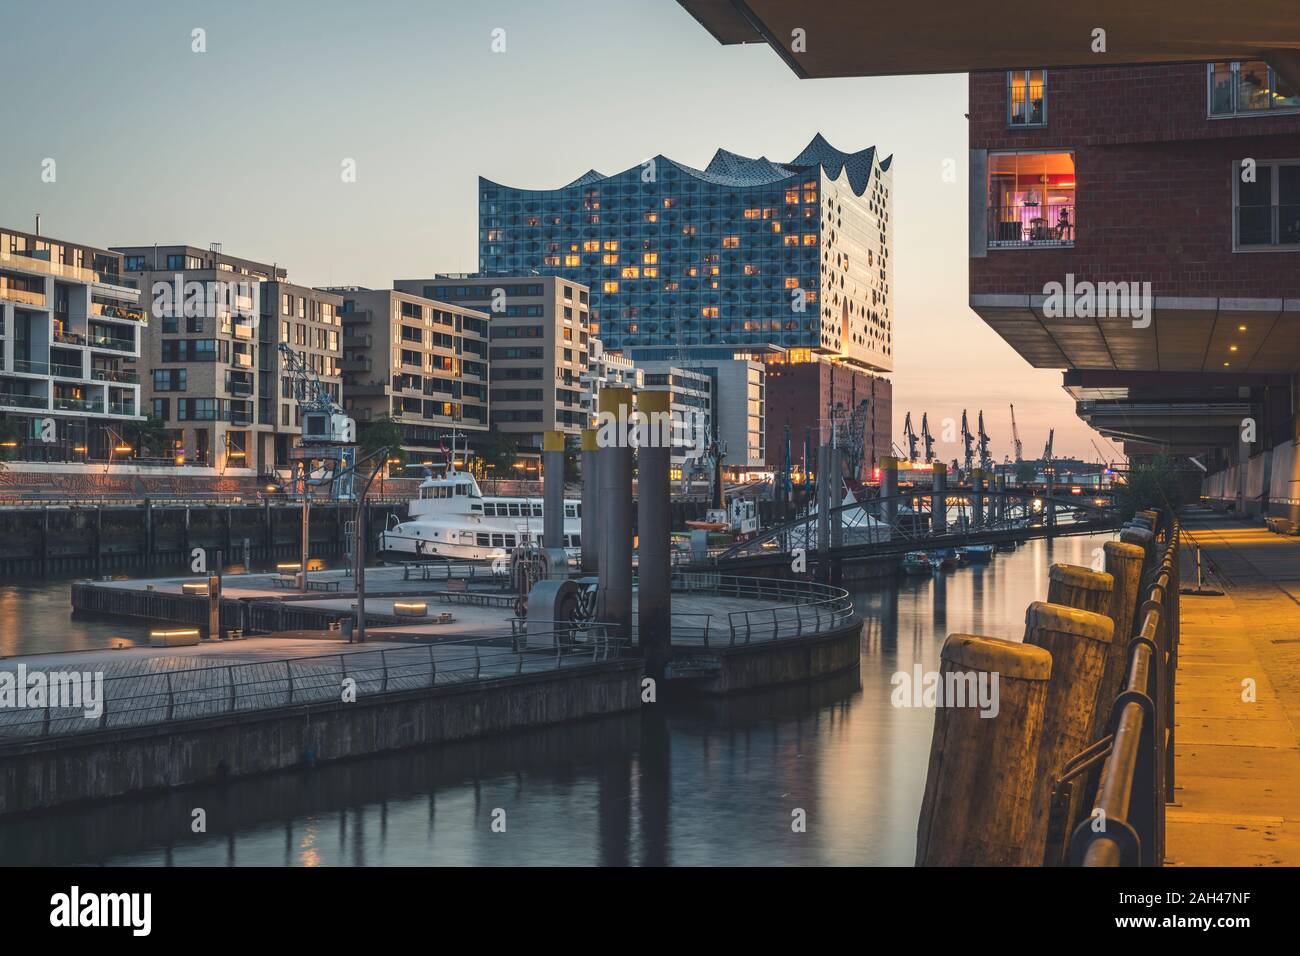 Alemania, Hamburgo, Hafencity, Sandtorhafen, Elbphilharmonie al atardecer Foto de stock